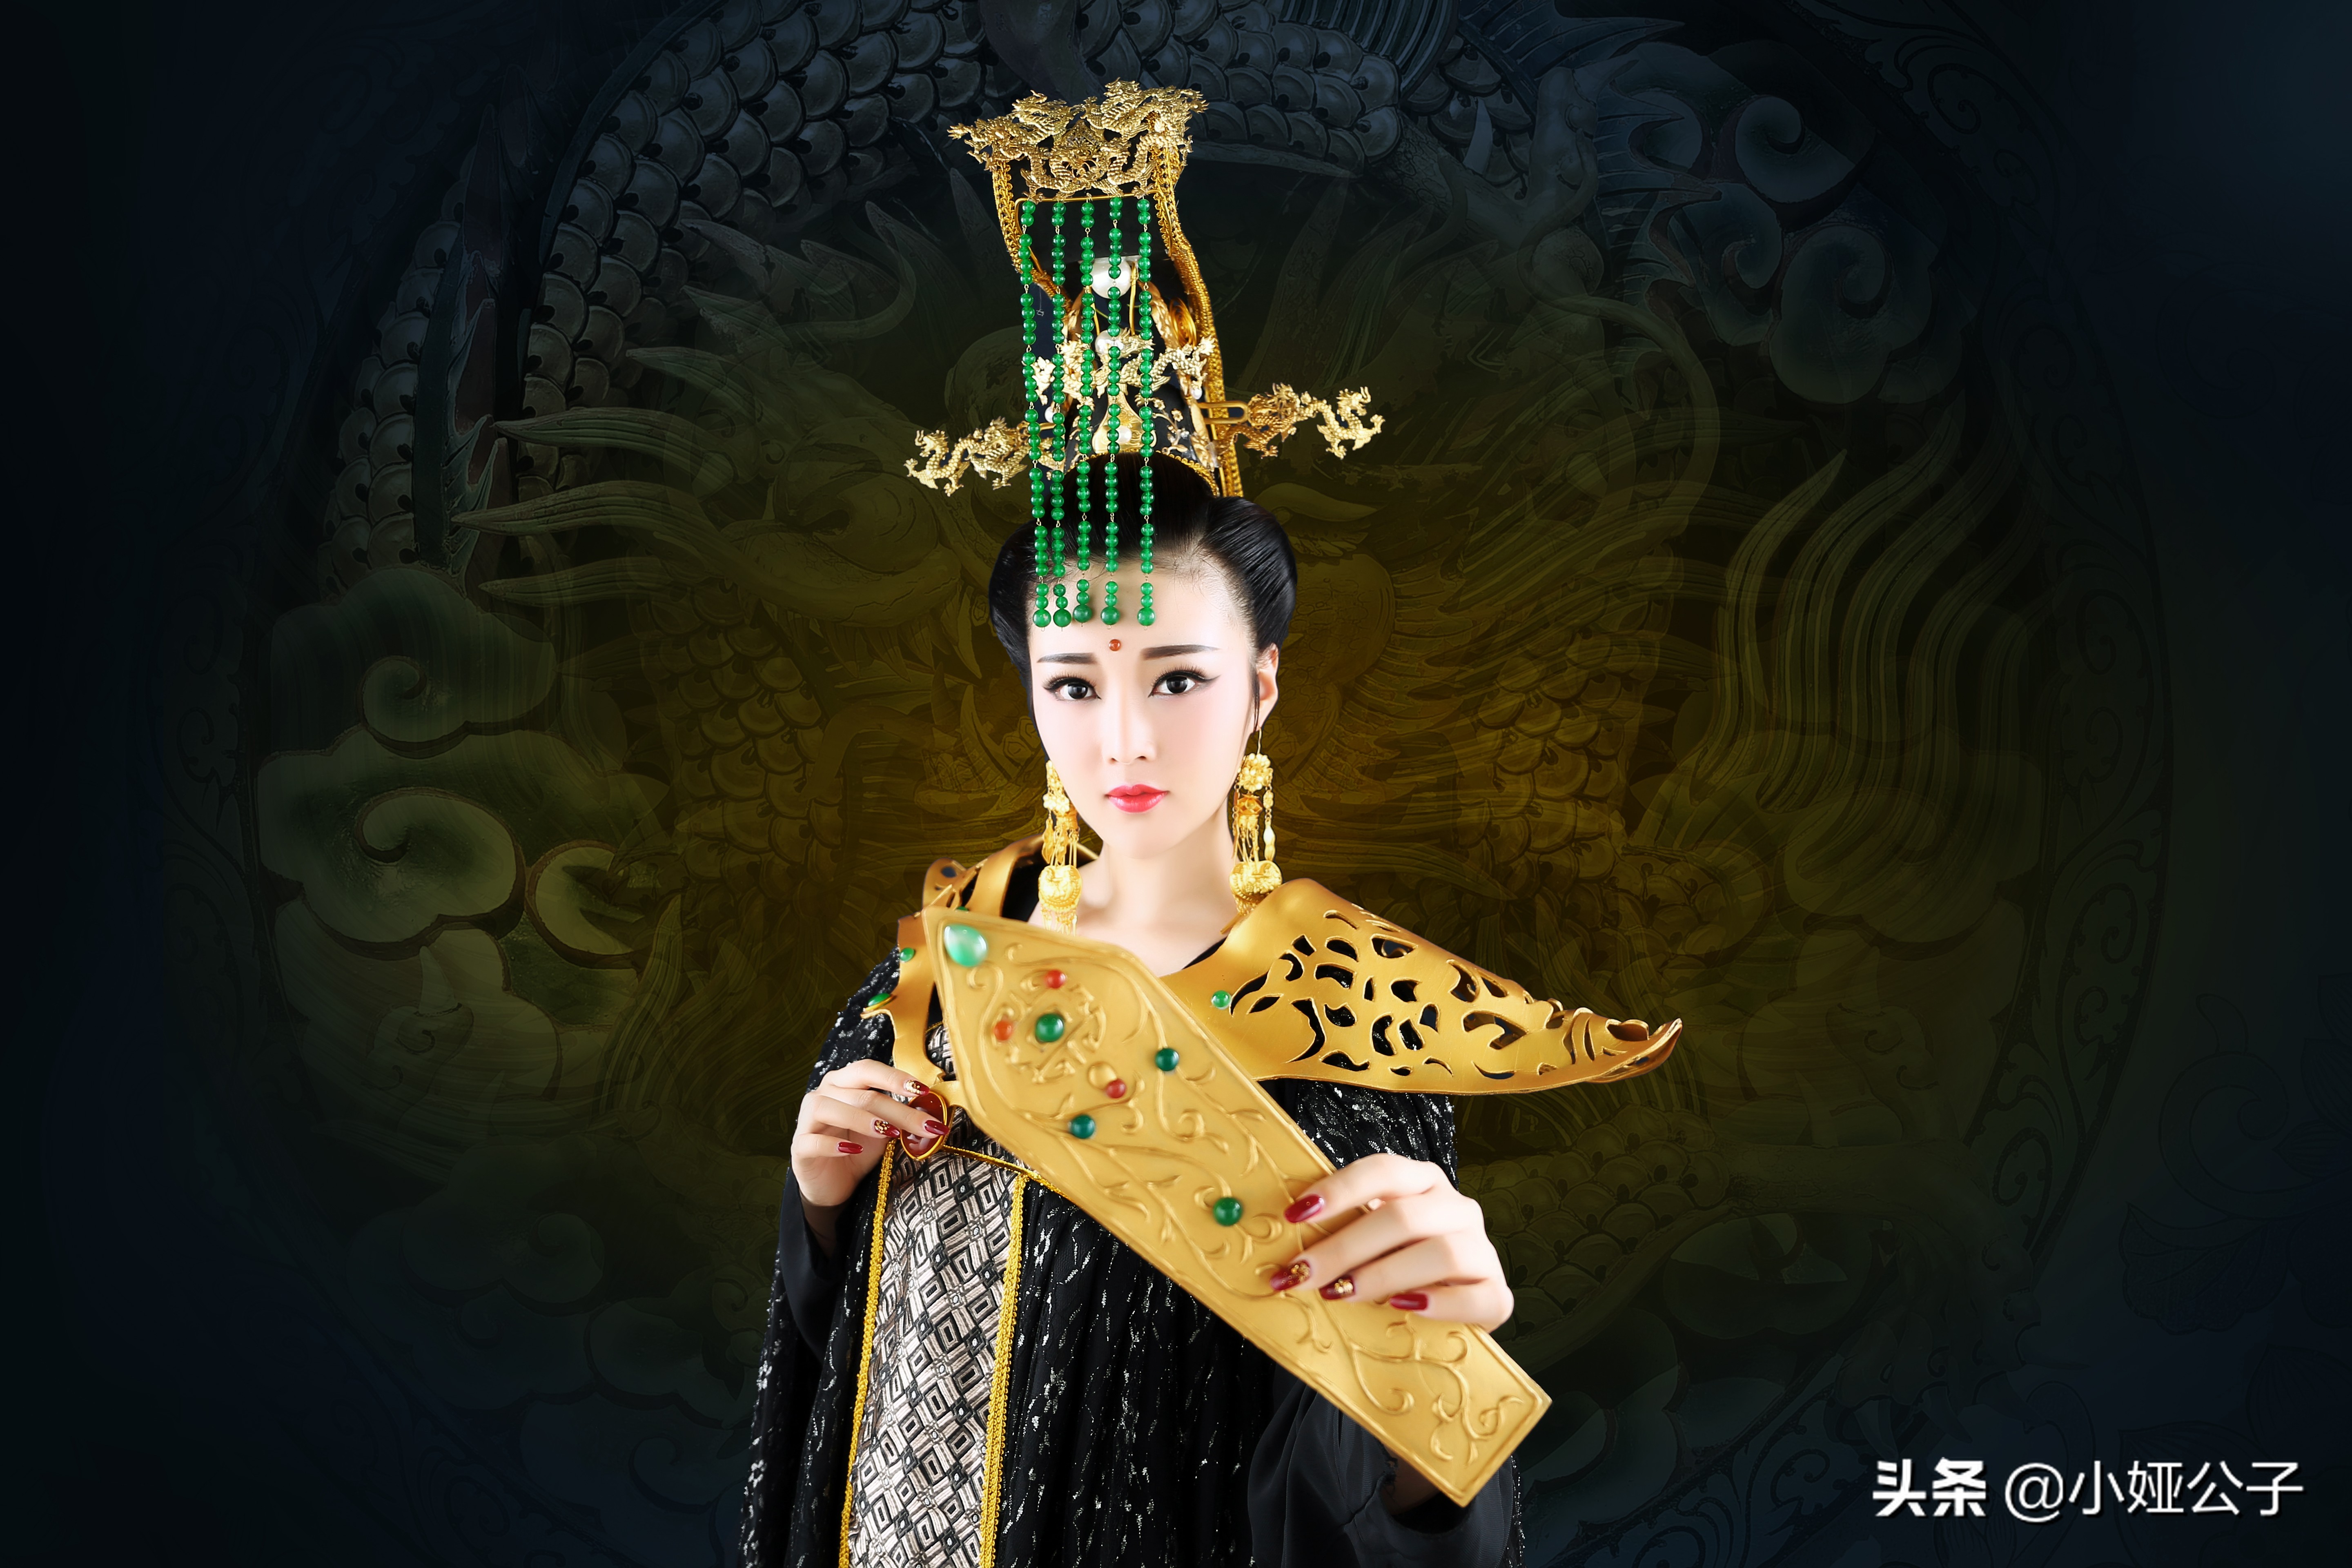 「唯武独尊」中国武周时期女皇帝武则天的丰功伟绩